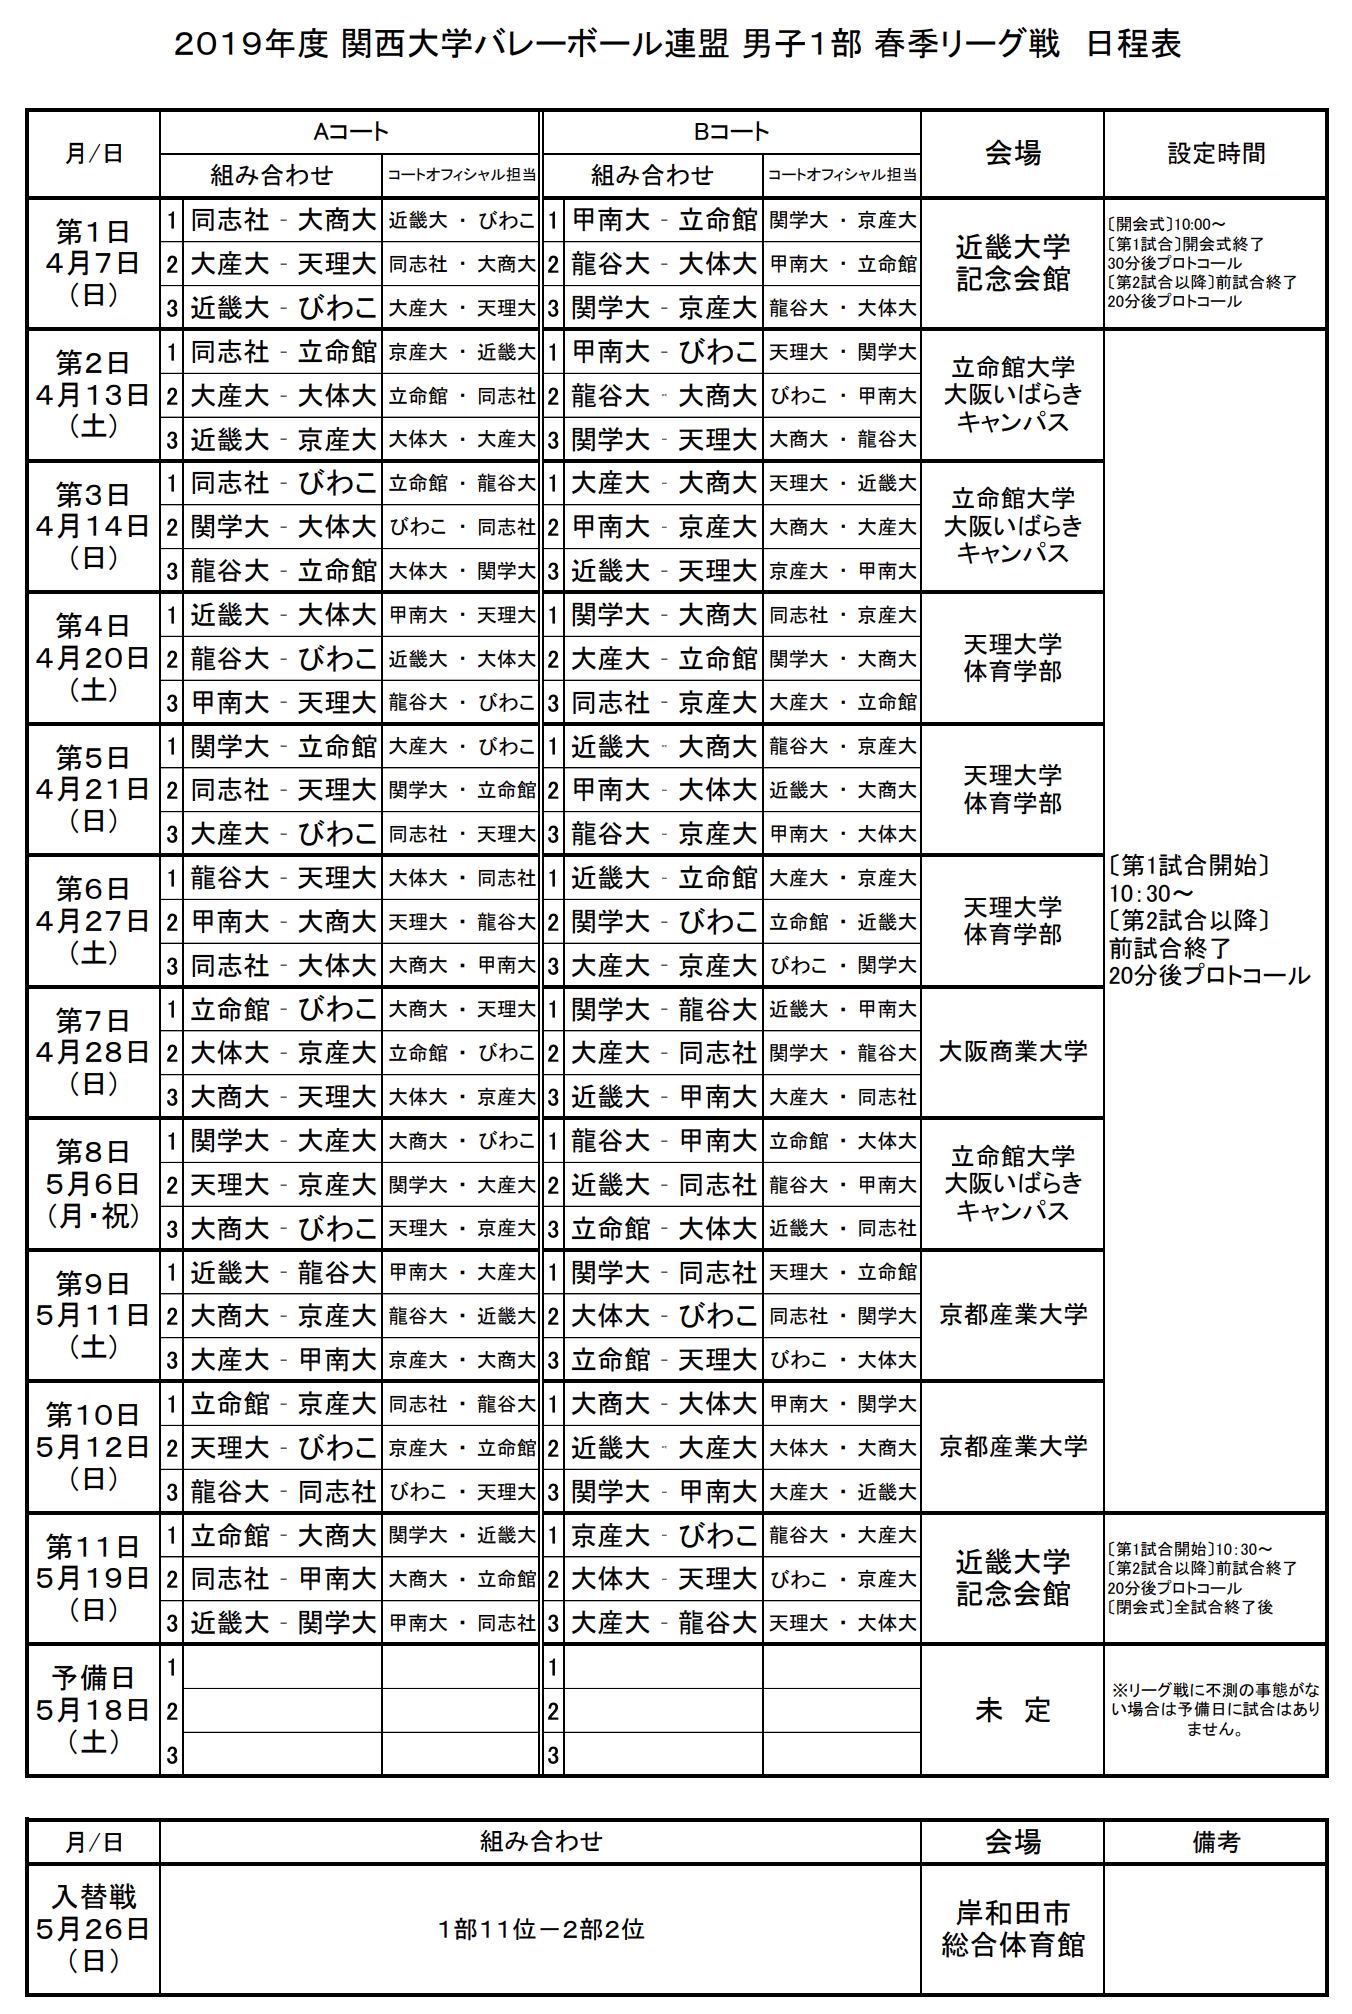 バレーボール 女子 ランキング 19 日本代表 男子10位に上昇 女子は7位後退 バレーボール 世界ランク更新